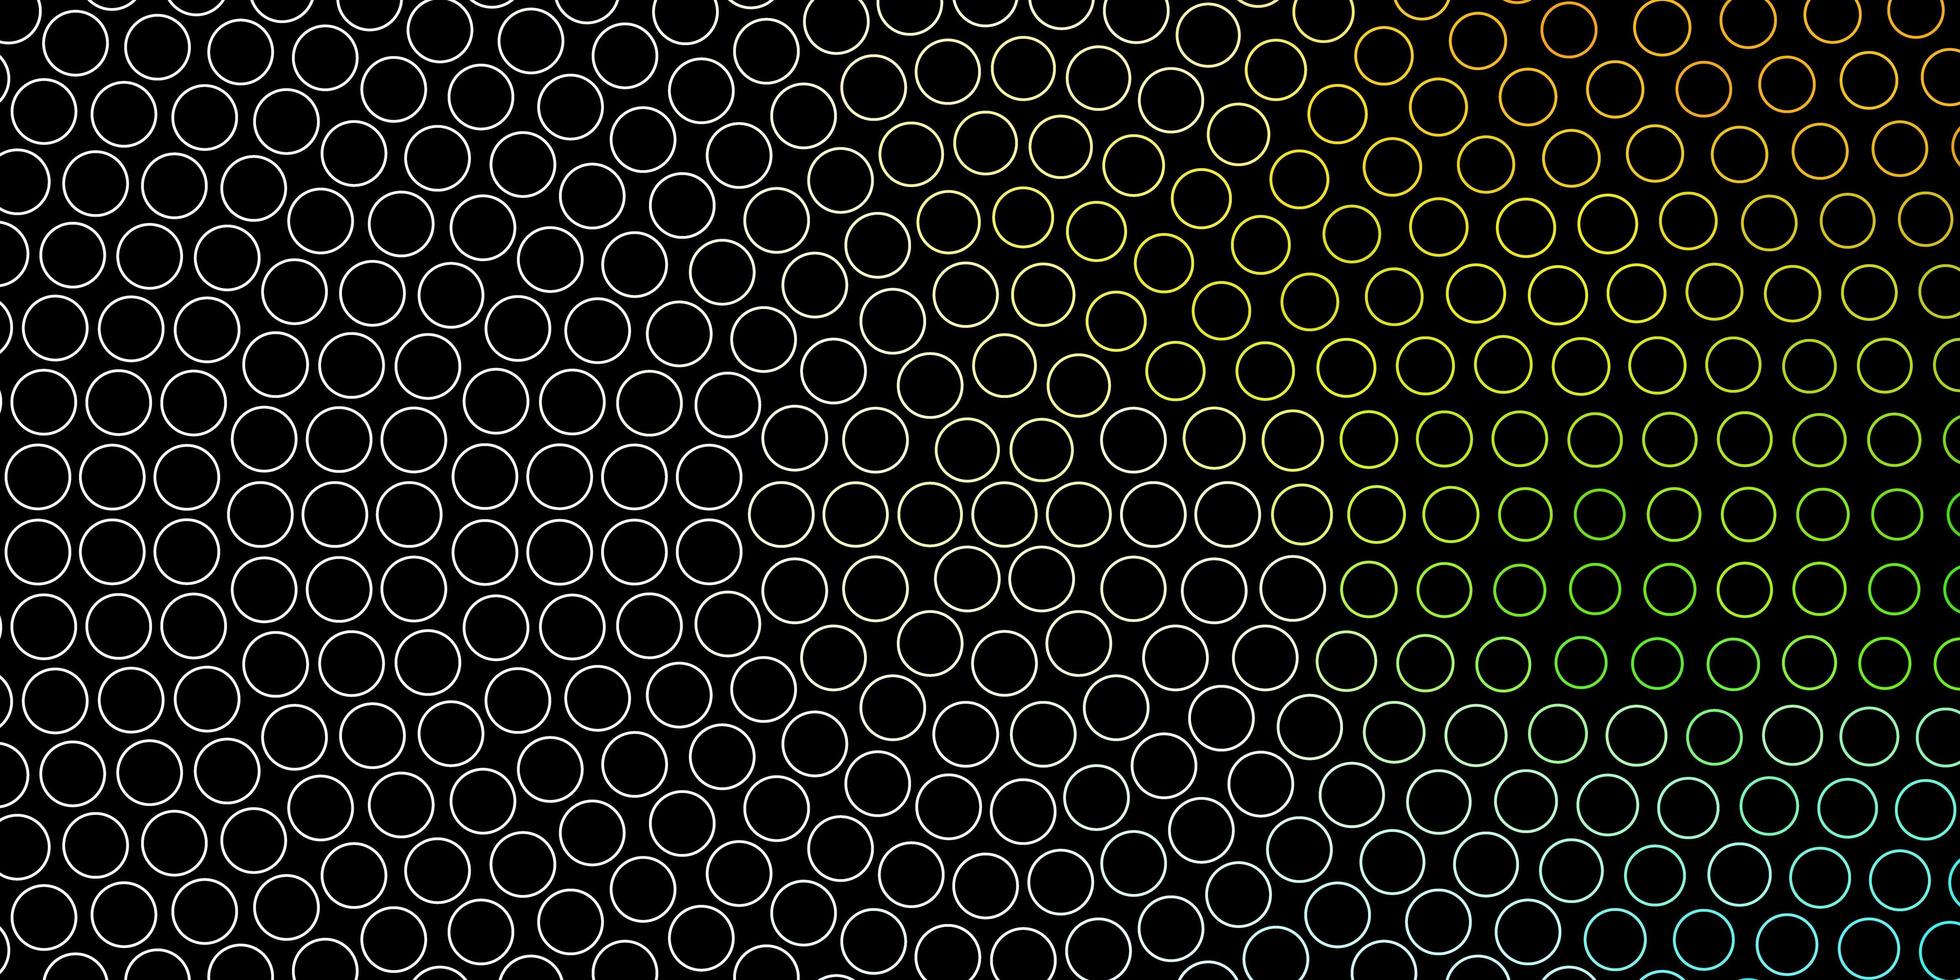 modelo de vetor multicolor escuro com círculos abstratos discos coloridos em design de fundo gradiente simples para banners de cartazes